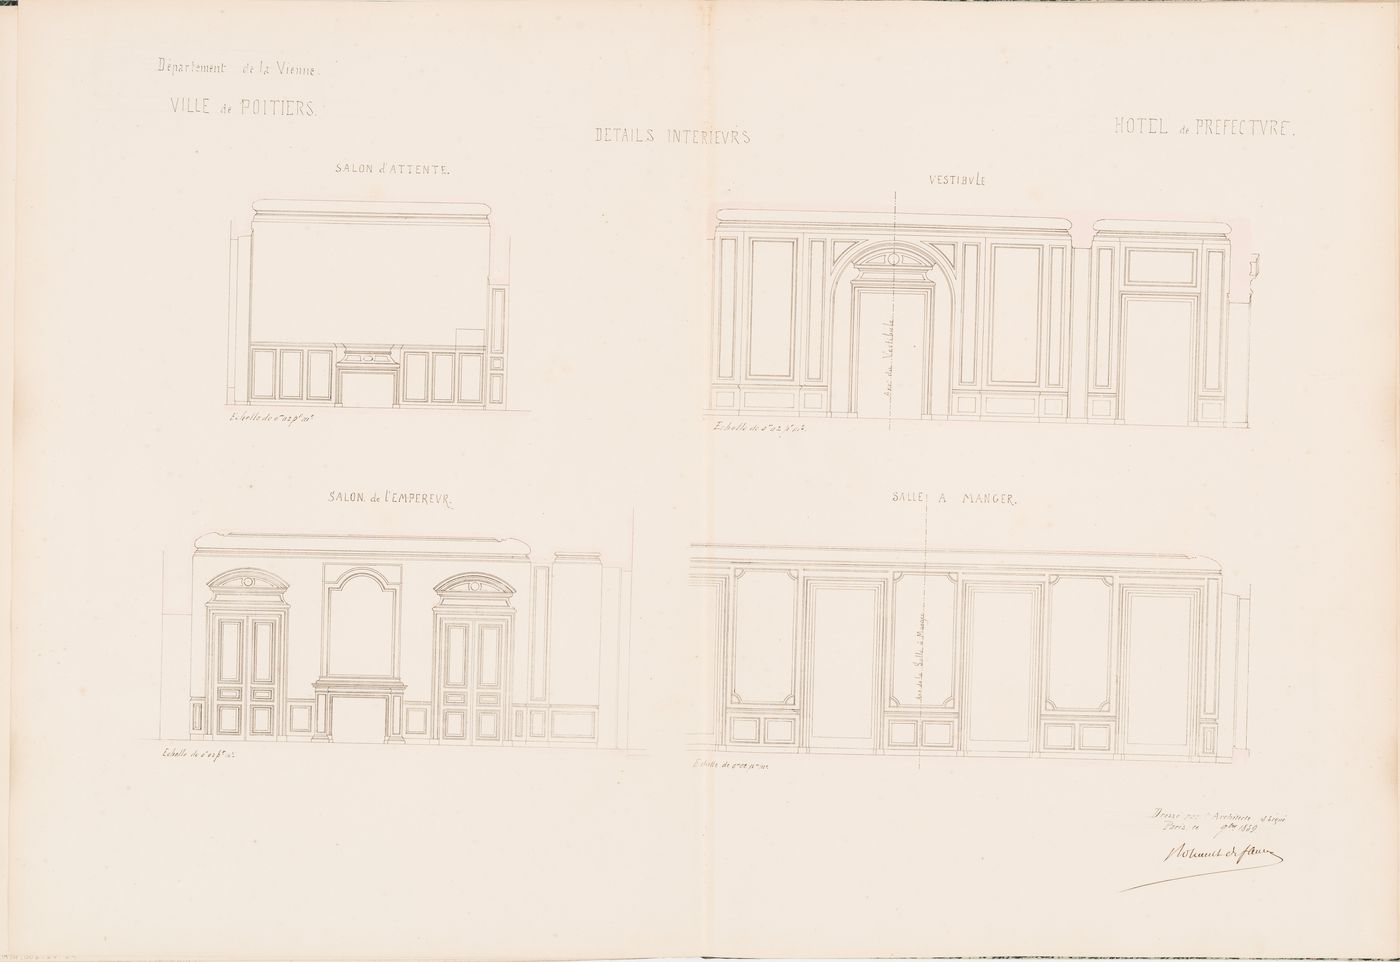 Project for a Hôtel de préfecture, Poitiers: Interior elevations for the Hôtel du Préfet showing panelling for the waiting room, vestibule, dining room, and "salon de l'empereur"